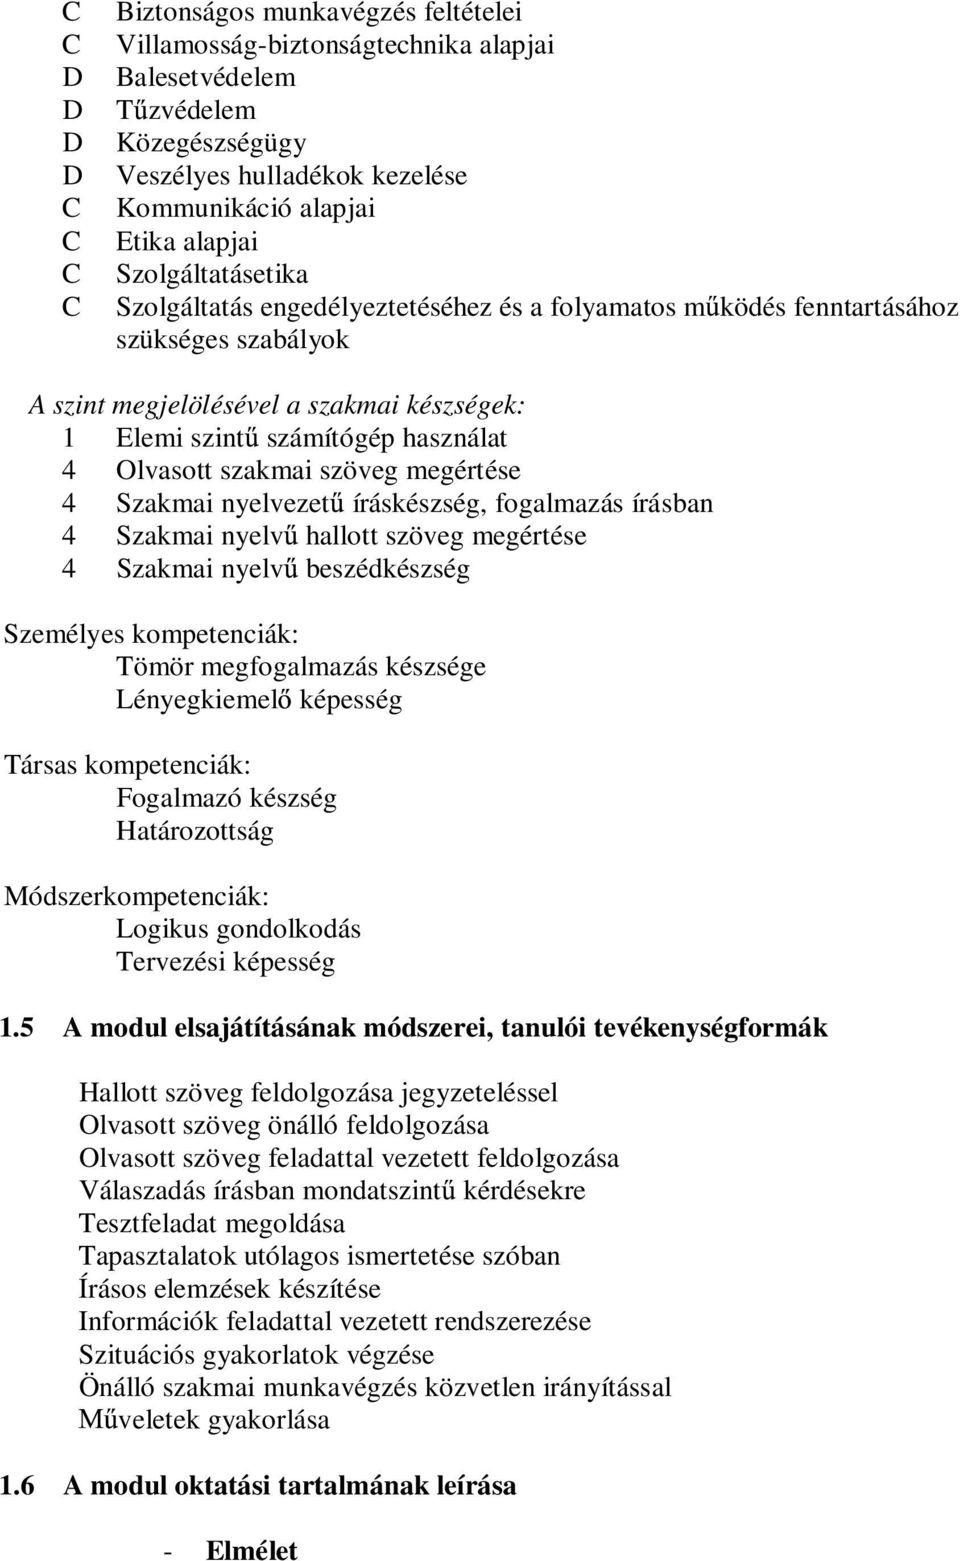 szakmai szöveg megértése 4 Szakmai nyelvezet íráskészség, fogalmazás írásban 4 Szakmai nyelv hallott szöveg megértése 4 Szakmai nyelv beszédkészség Személyes kompetenciák: Tömör megfogalmazás